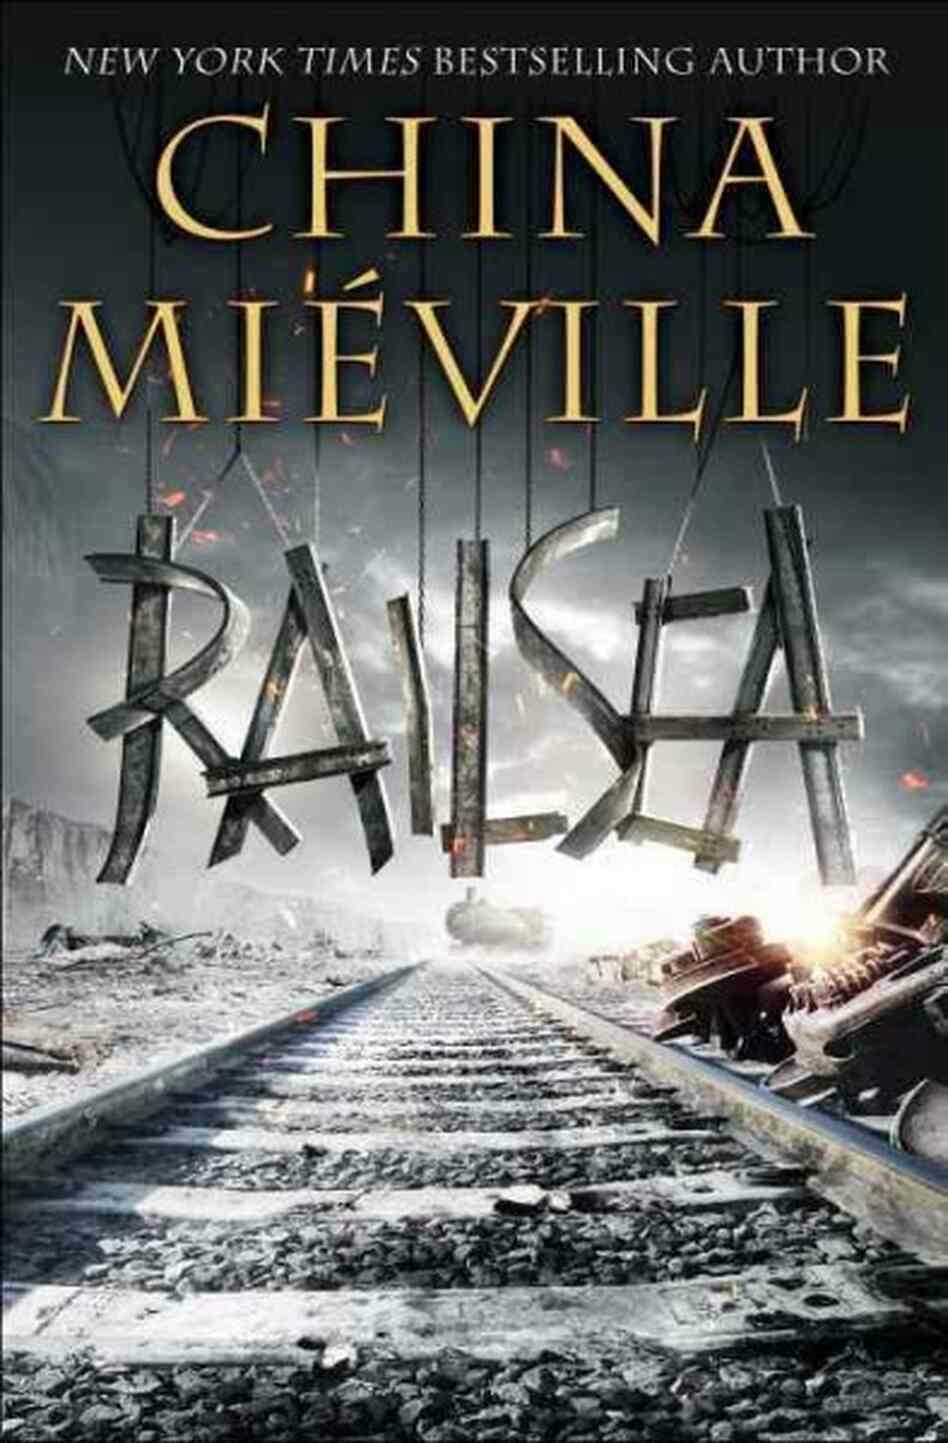 Railsea book cover npr